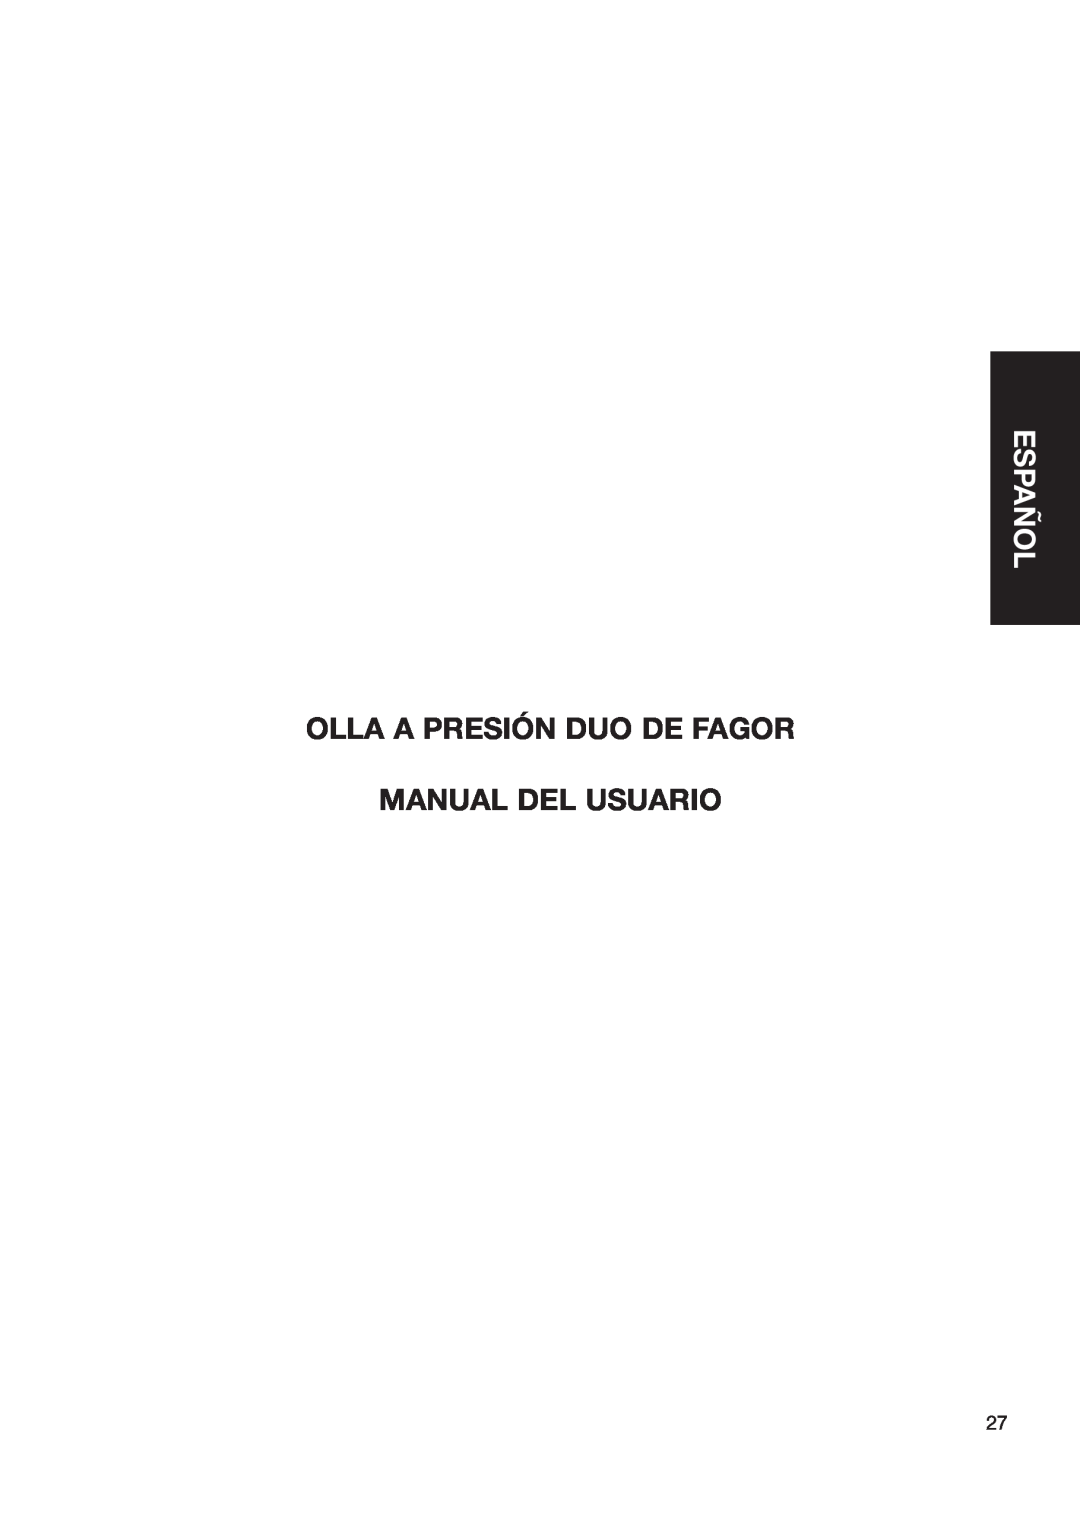 Fagor America fagor duo pressure cooker user manual Español, Olla A Presión Duo De Fagor Manual Del Usuario 